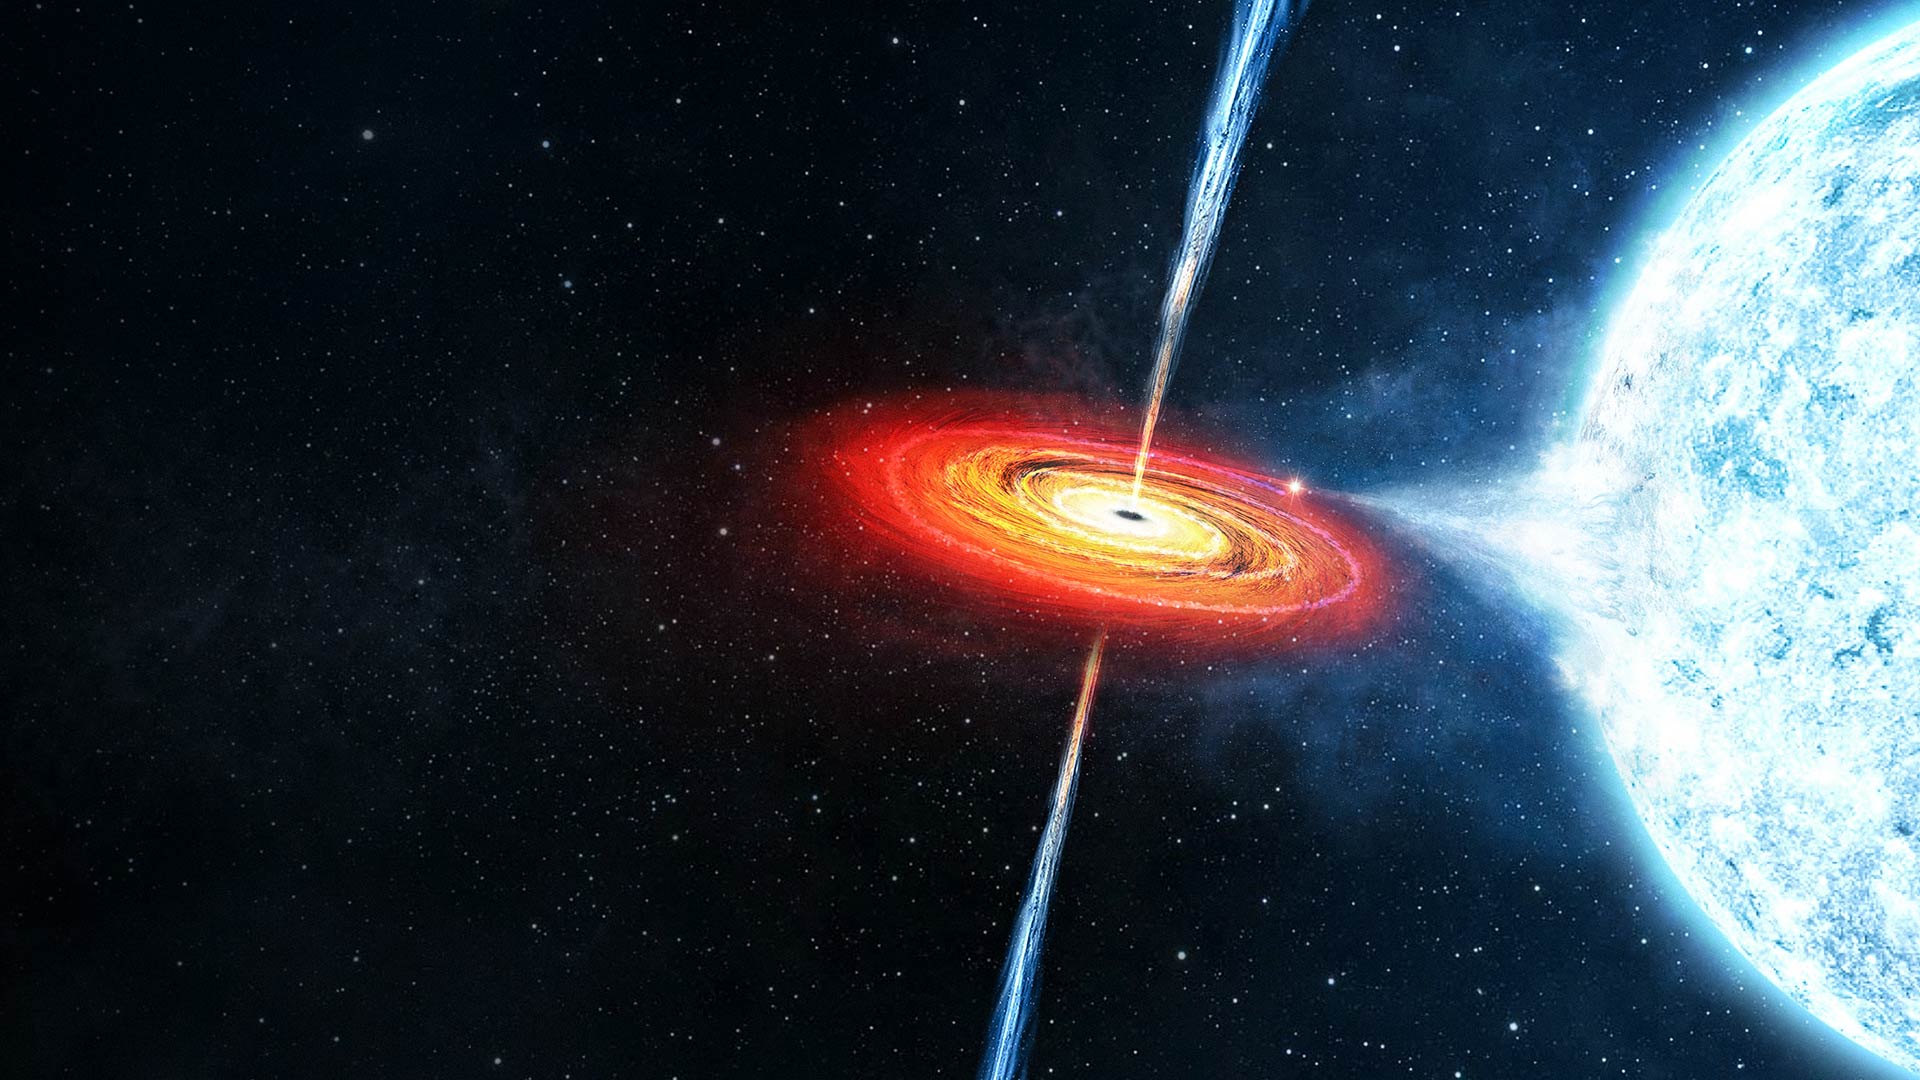 https://s32036.pcdn.co/wp-content/uploads/2020/02/magnetar-vs-black-hole.jpg